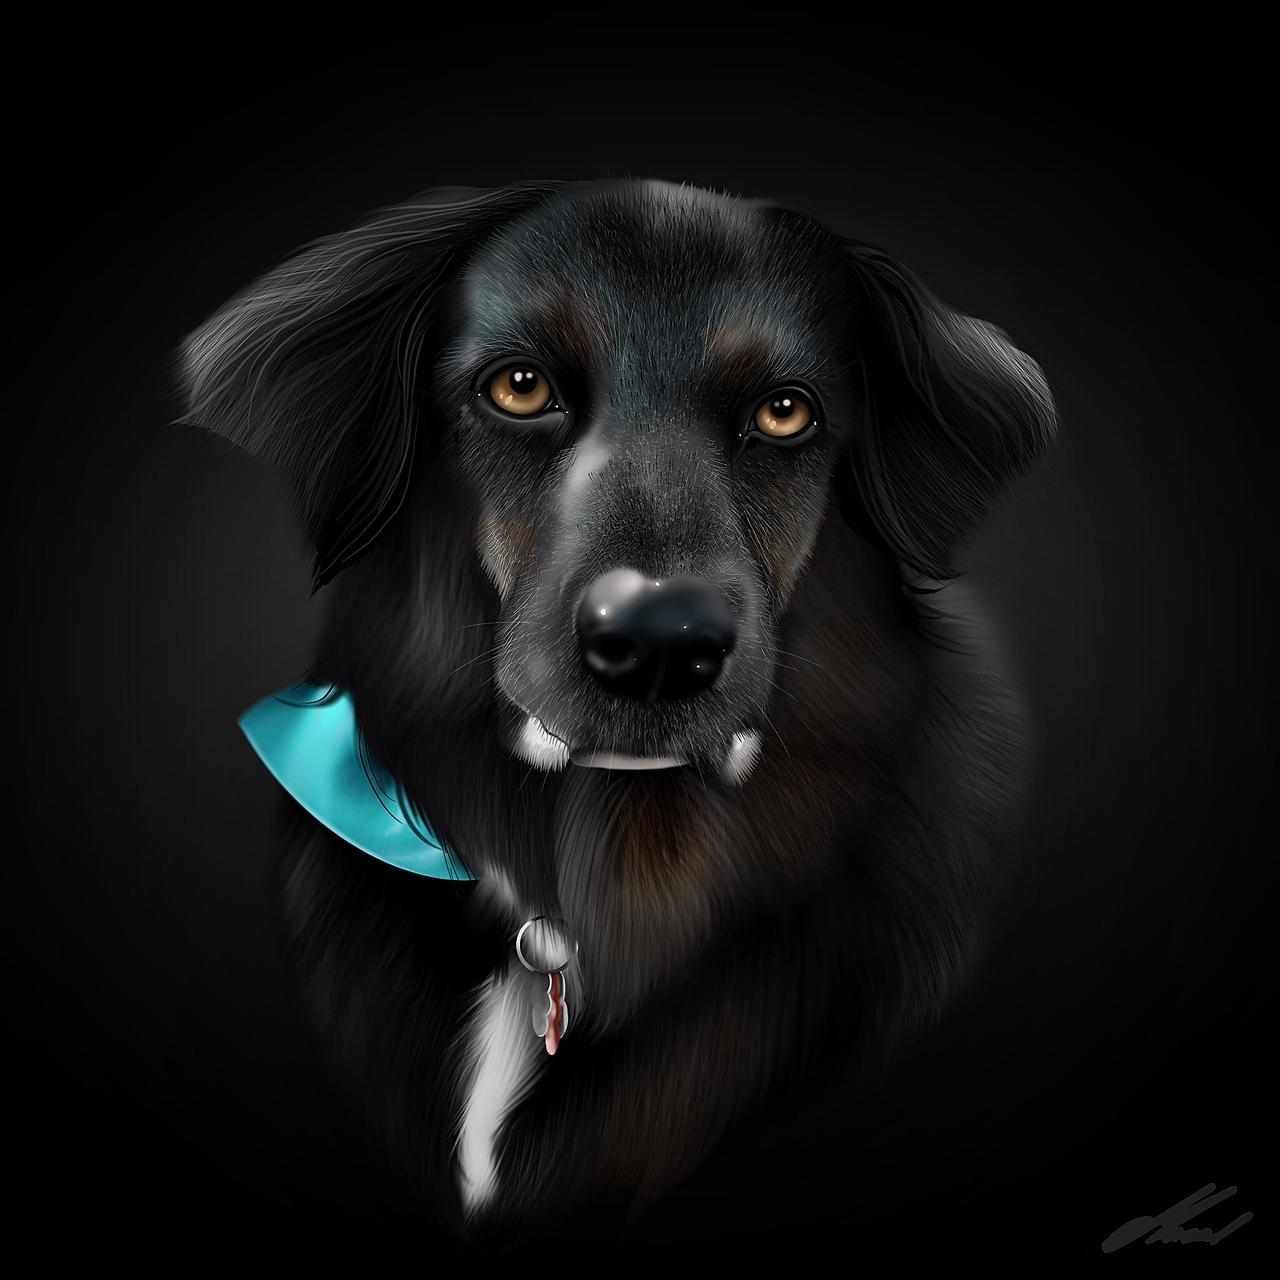 Благородный черный пес. Янтарные глаза у собаки. Черная собака с янтарными глазами. Чёрная собака с оранжевыми глазами арт. Портрет черной собаки на ярком Звездном фоне.